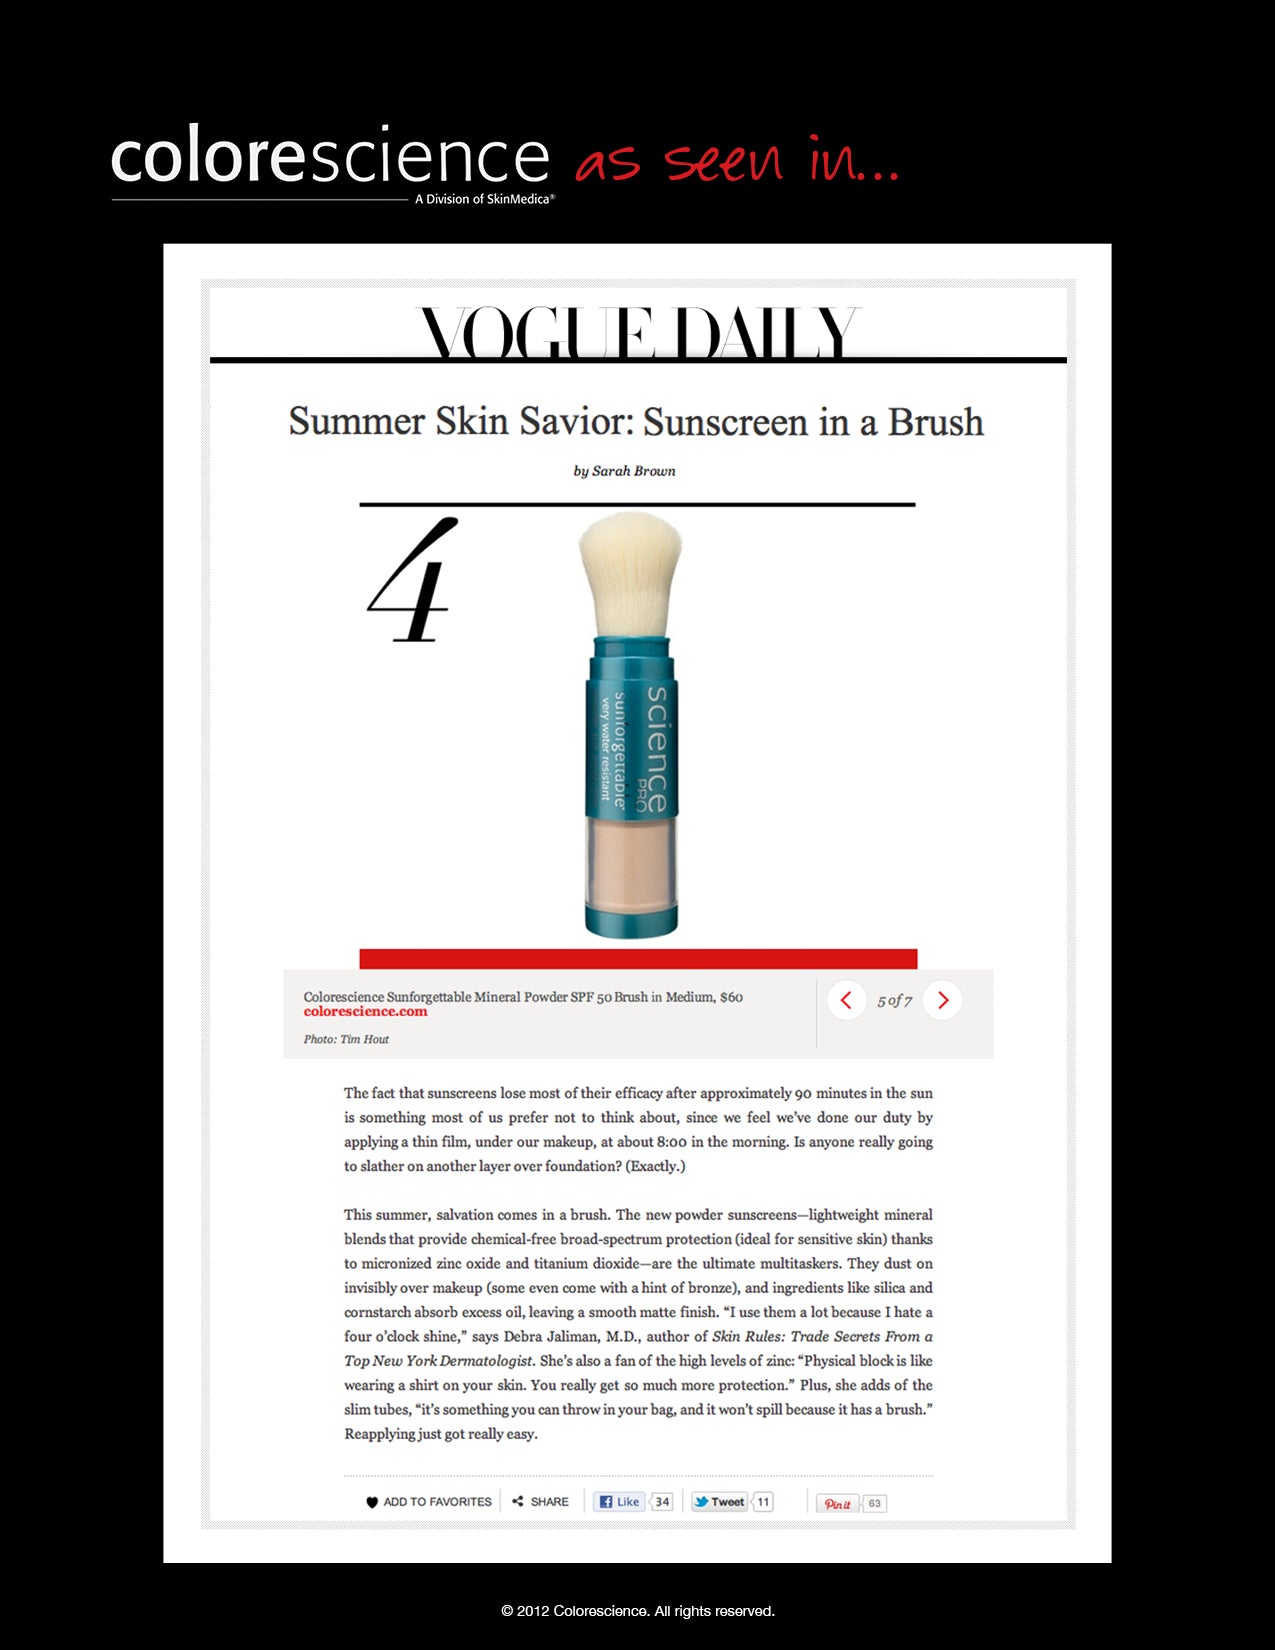 Summer Skin Savior: Sunscreen in a Brush